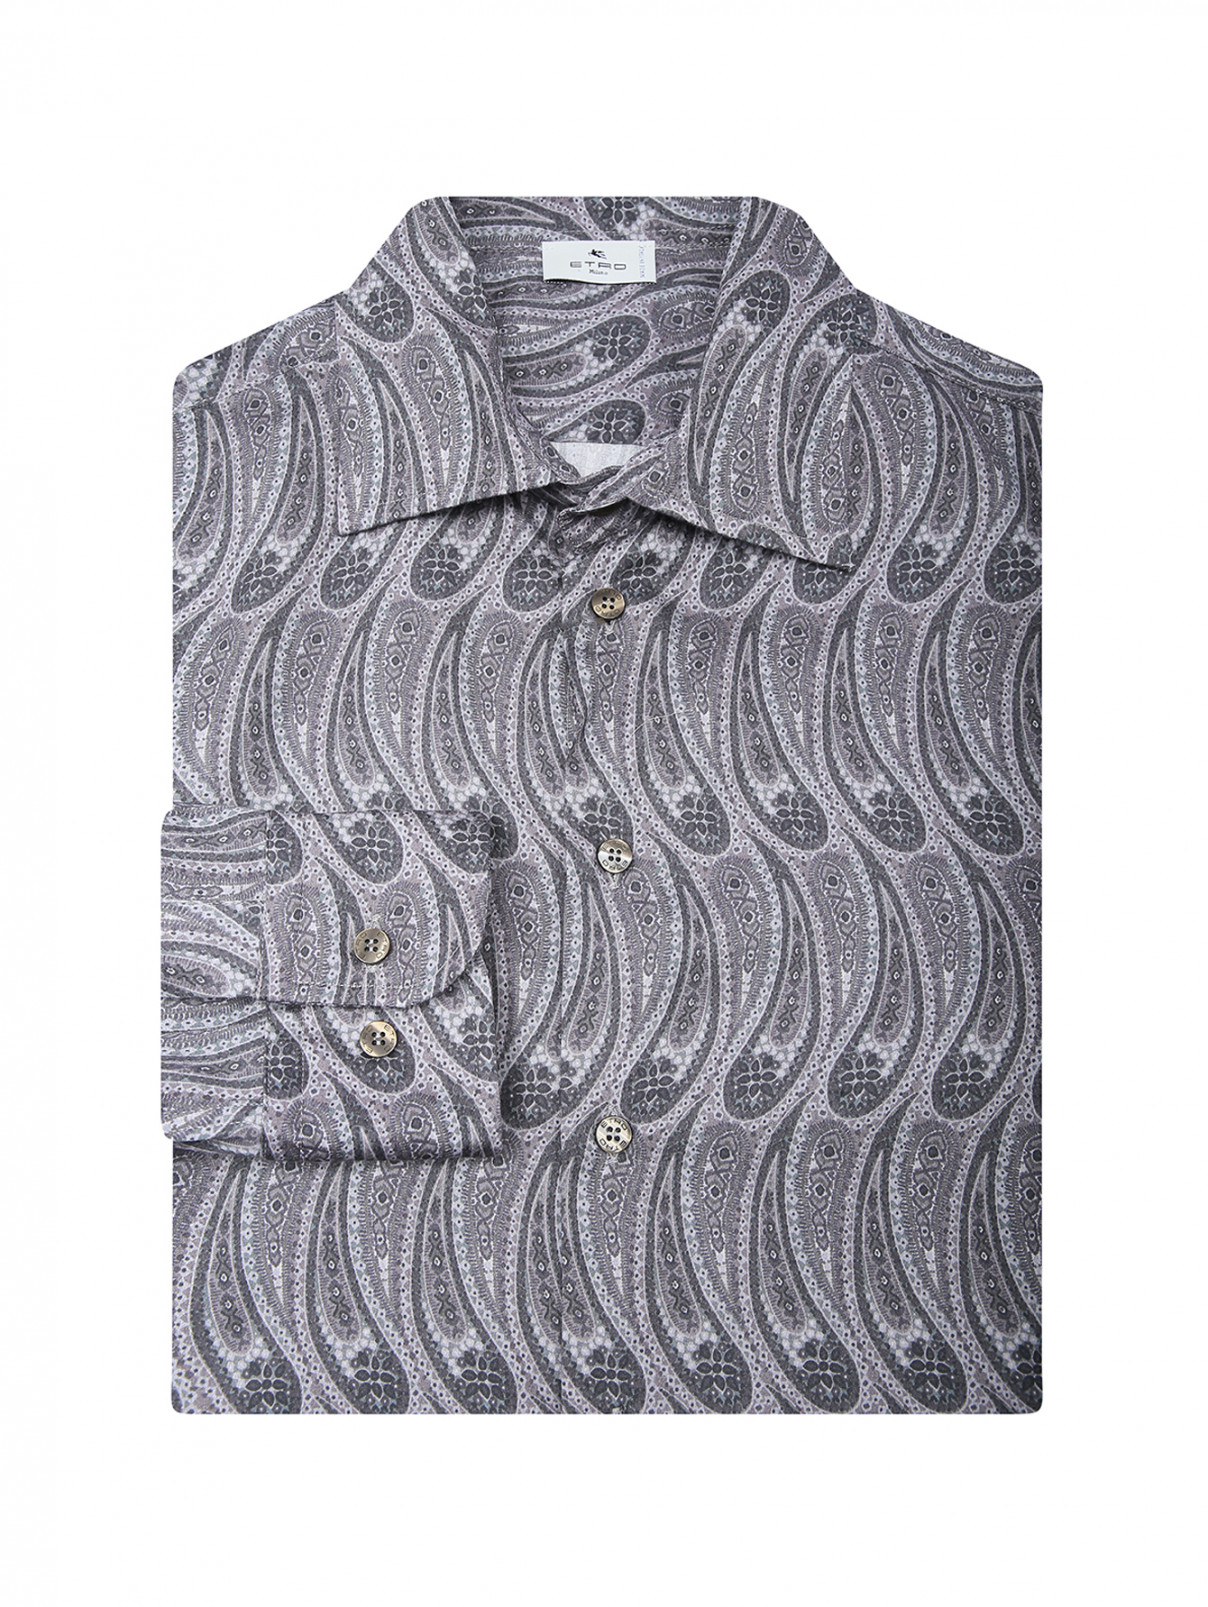 Рубашкка с узором пейсли Etro  –  Общий вид  – Цвет:  Серый